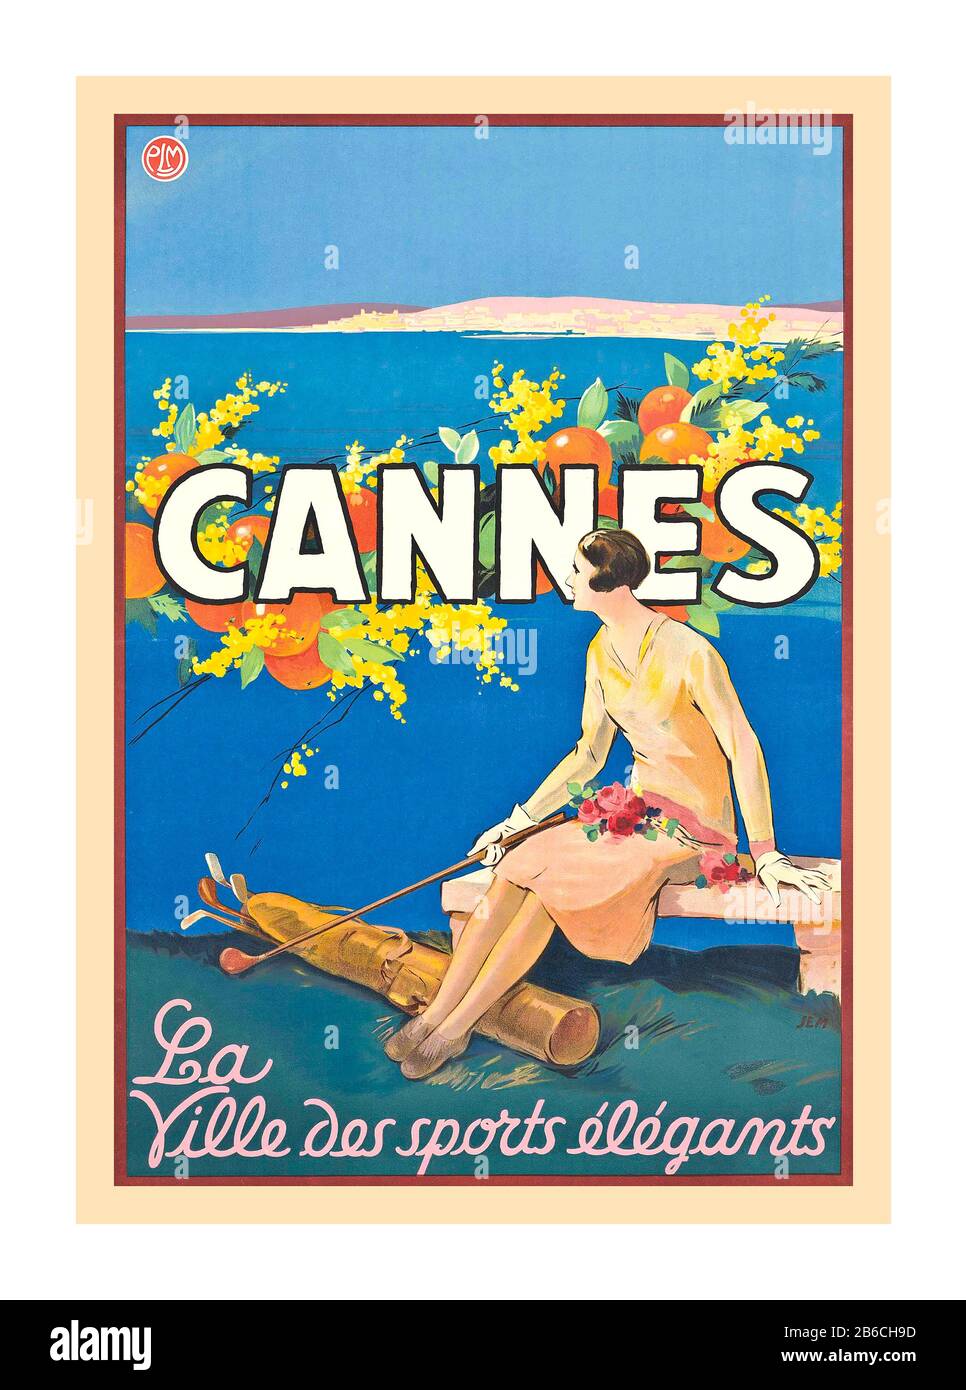 Cannes Vintage francese 1930 illustrazione poster di viaggio per Cannes, che mostra una donna in possesso di un golf club e seduto sopra il Mar Mediterraneo, ‘Cannes - la Ville des sports elegants’, CANNES LA CITTÀ DEGLI SPORT ELEGANTI 1930. Foto Stock